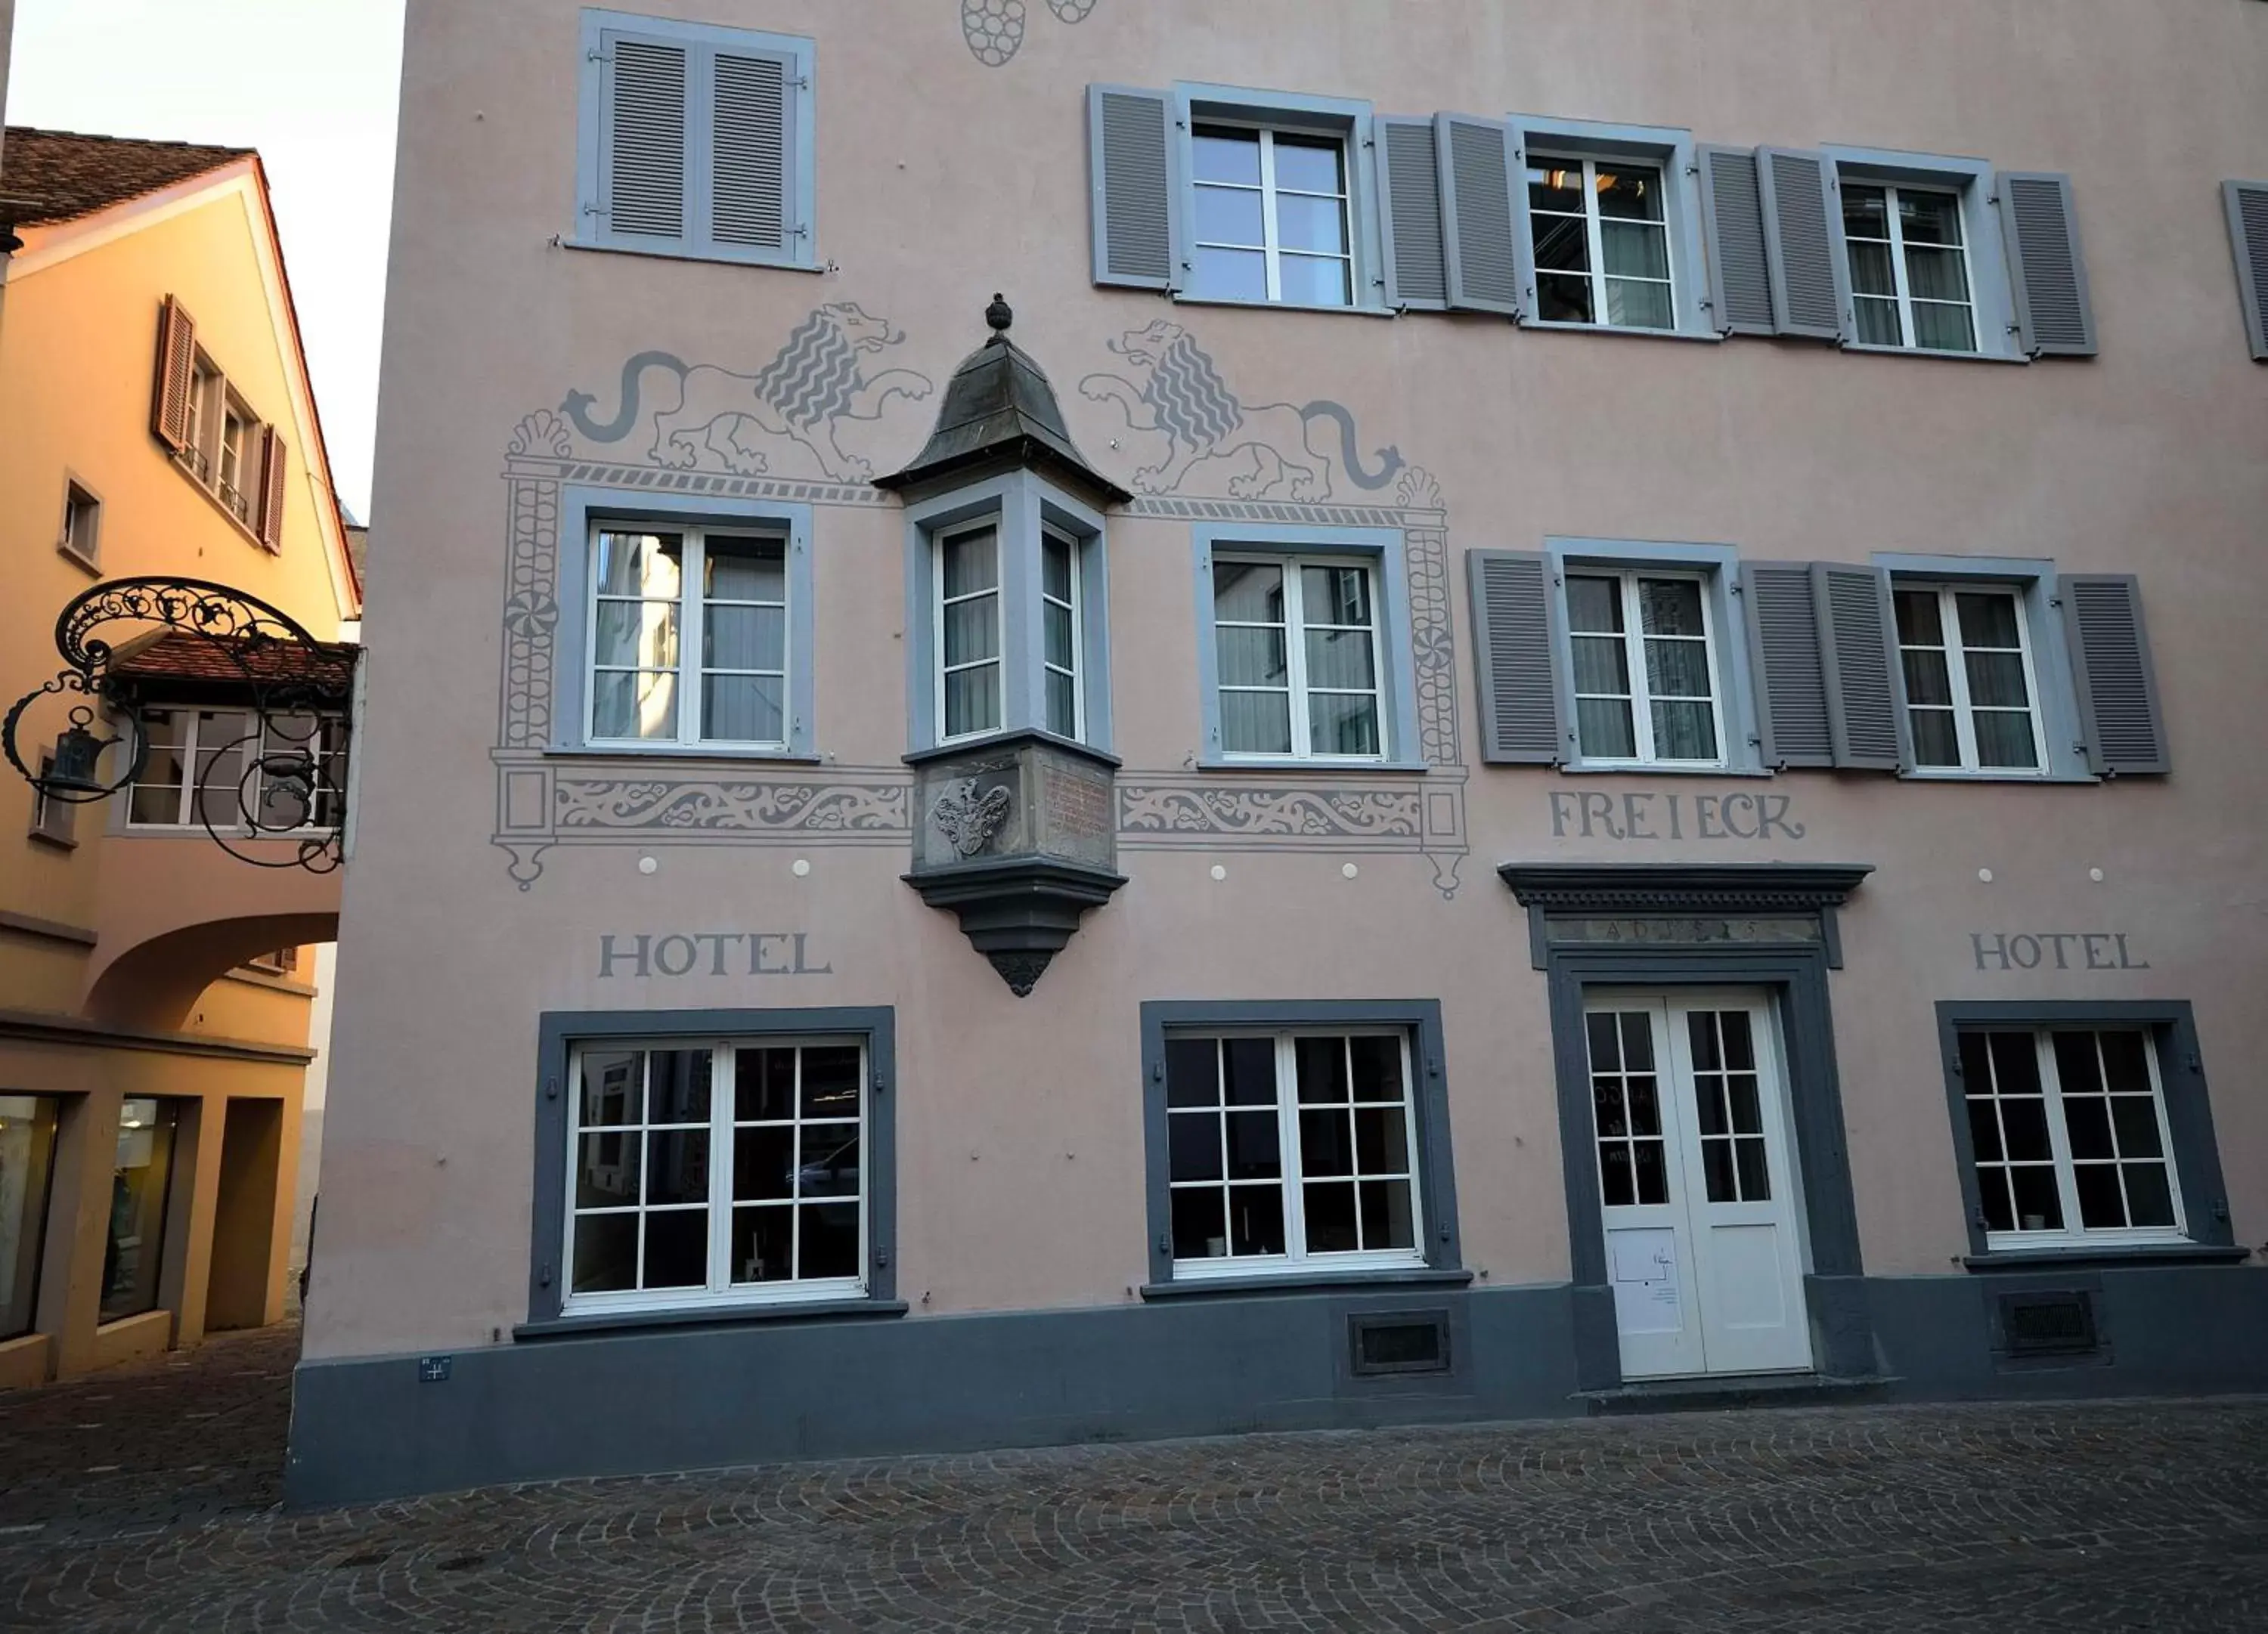 Facade/entrance, Property Building in Ambiente Hotel Freieck